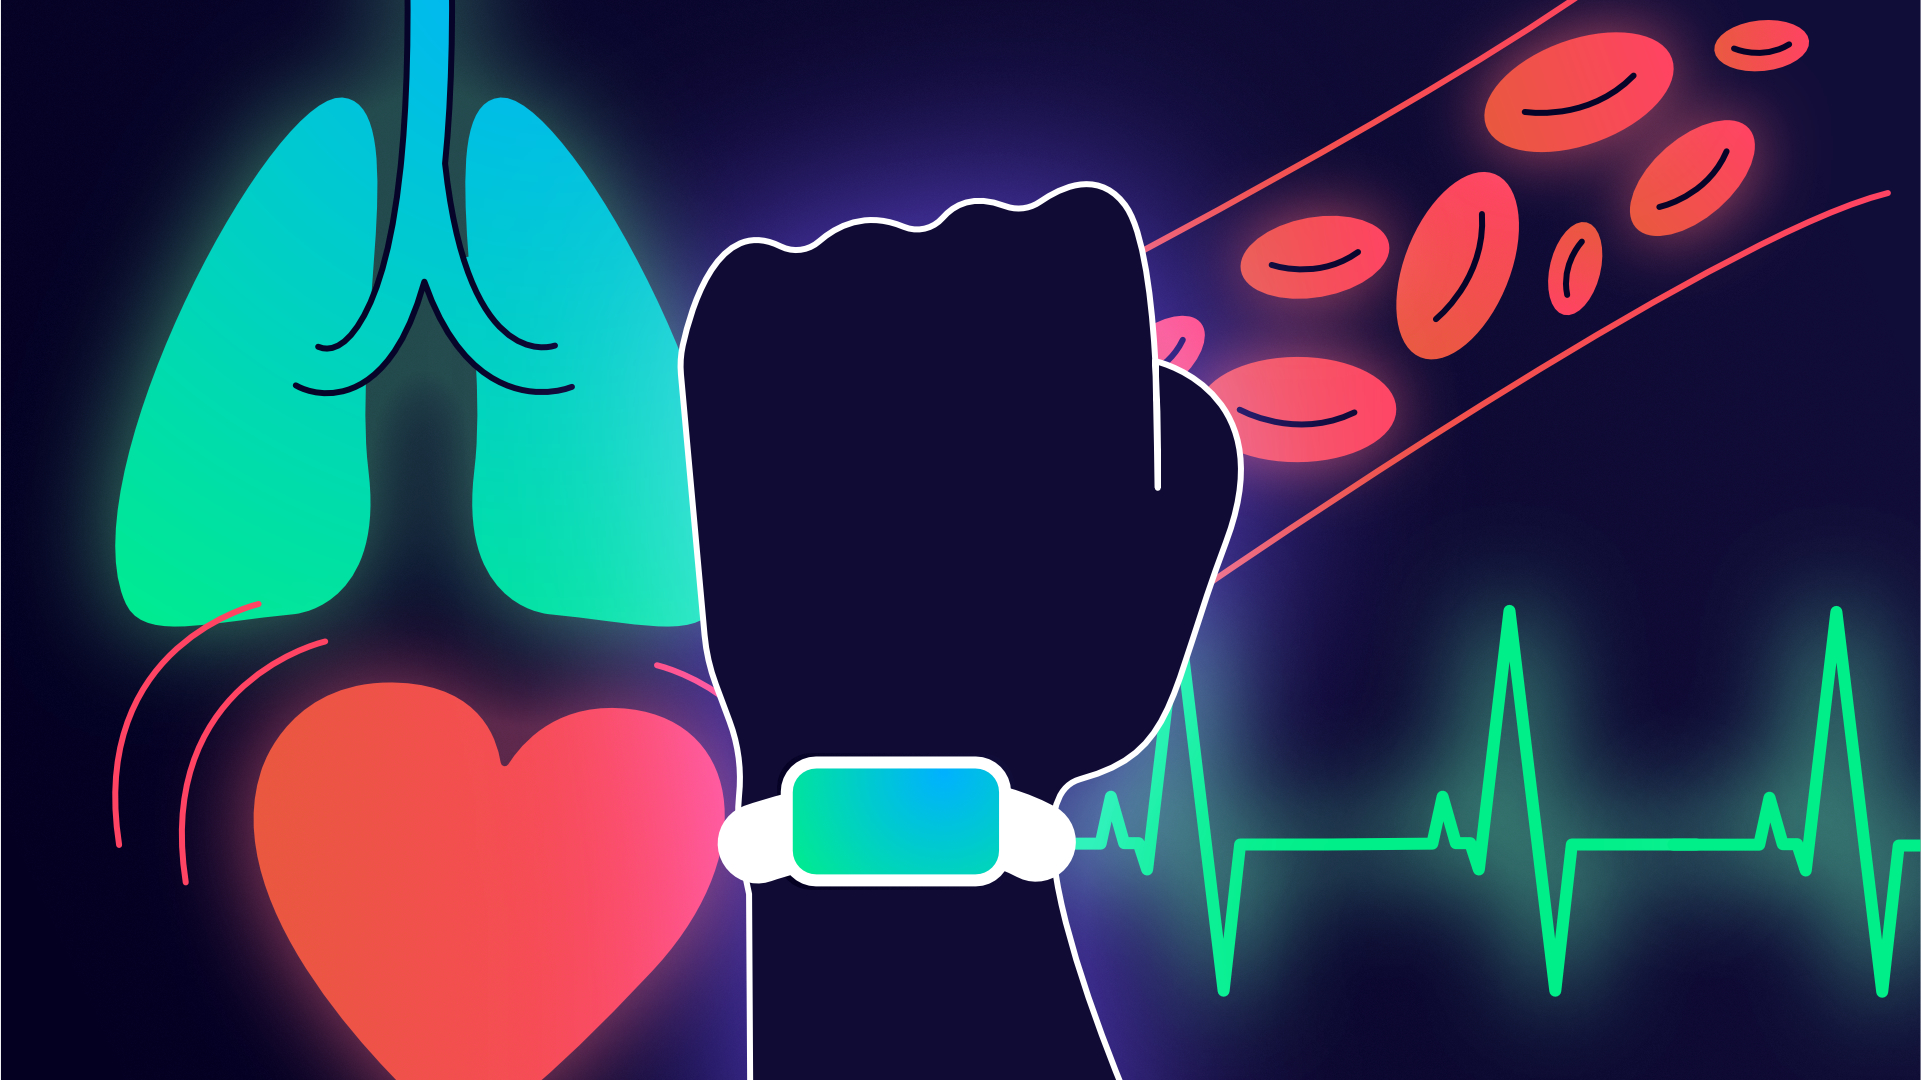 Rythme cardiaque, VO2max, SpO2, ECG : comment les montres connectées prennent soin de votre cœur